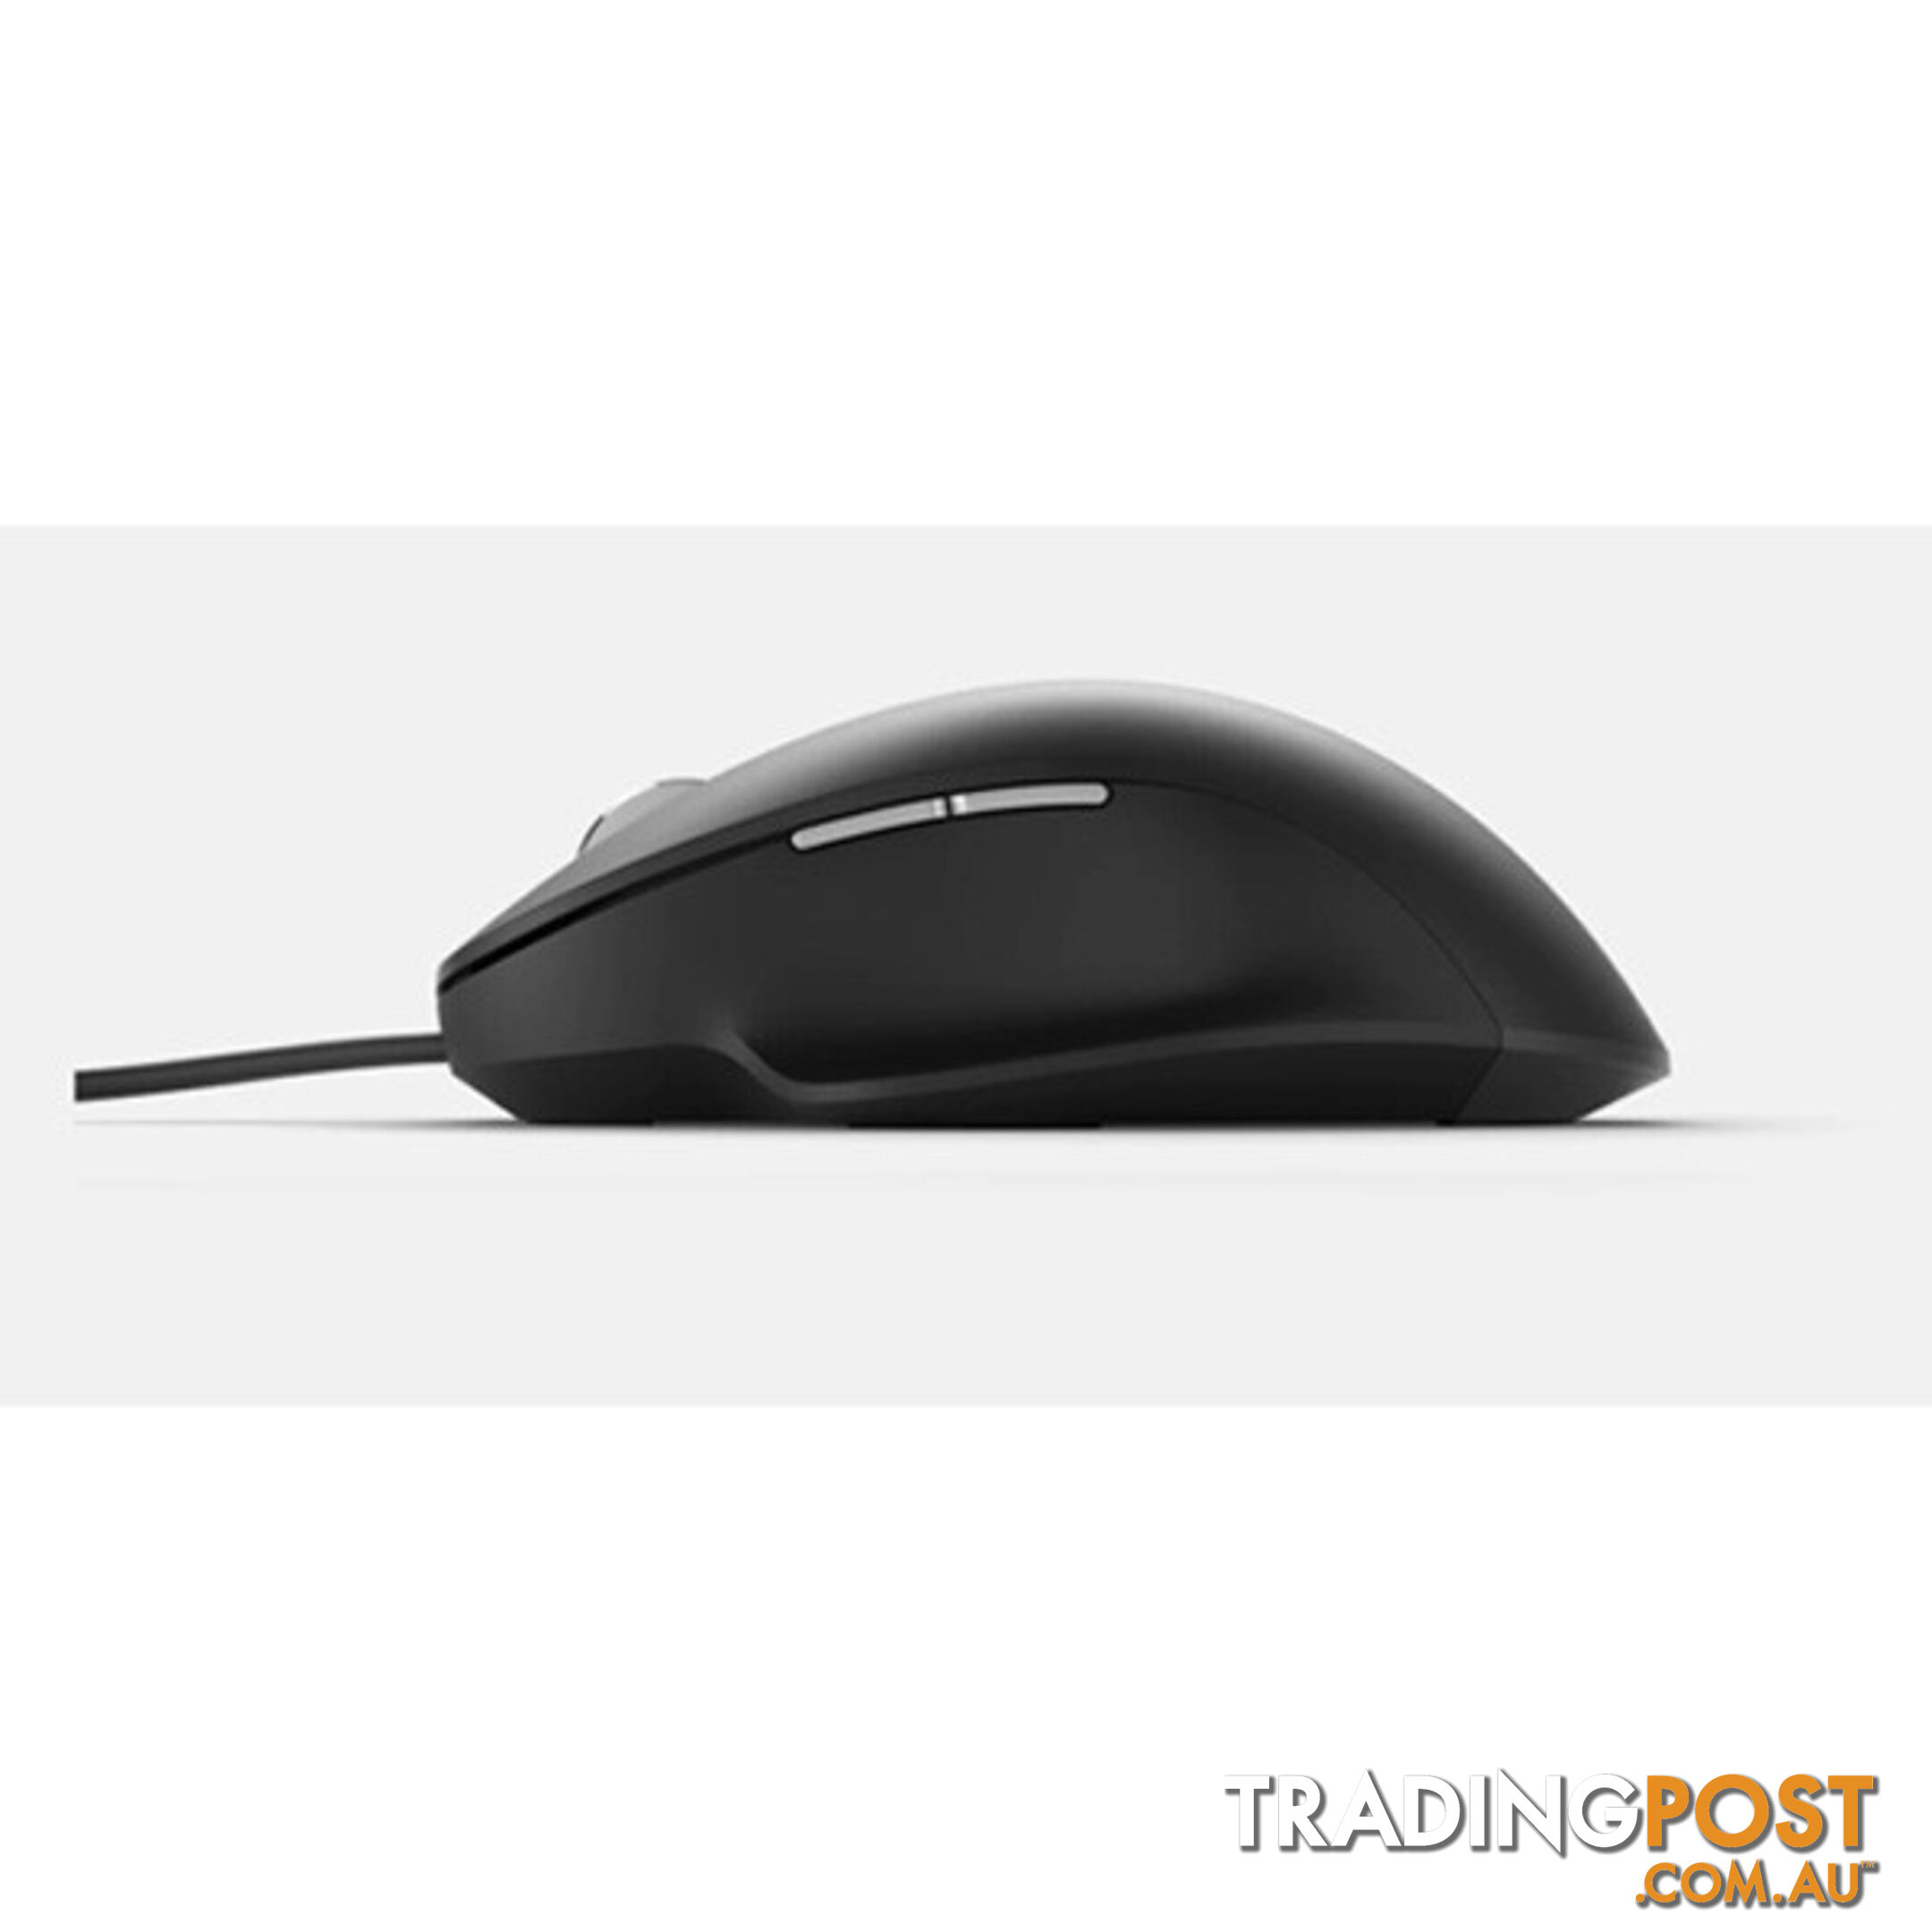 Microsoft RJG-00005 Ergonomic Mouse Black